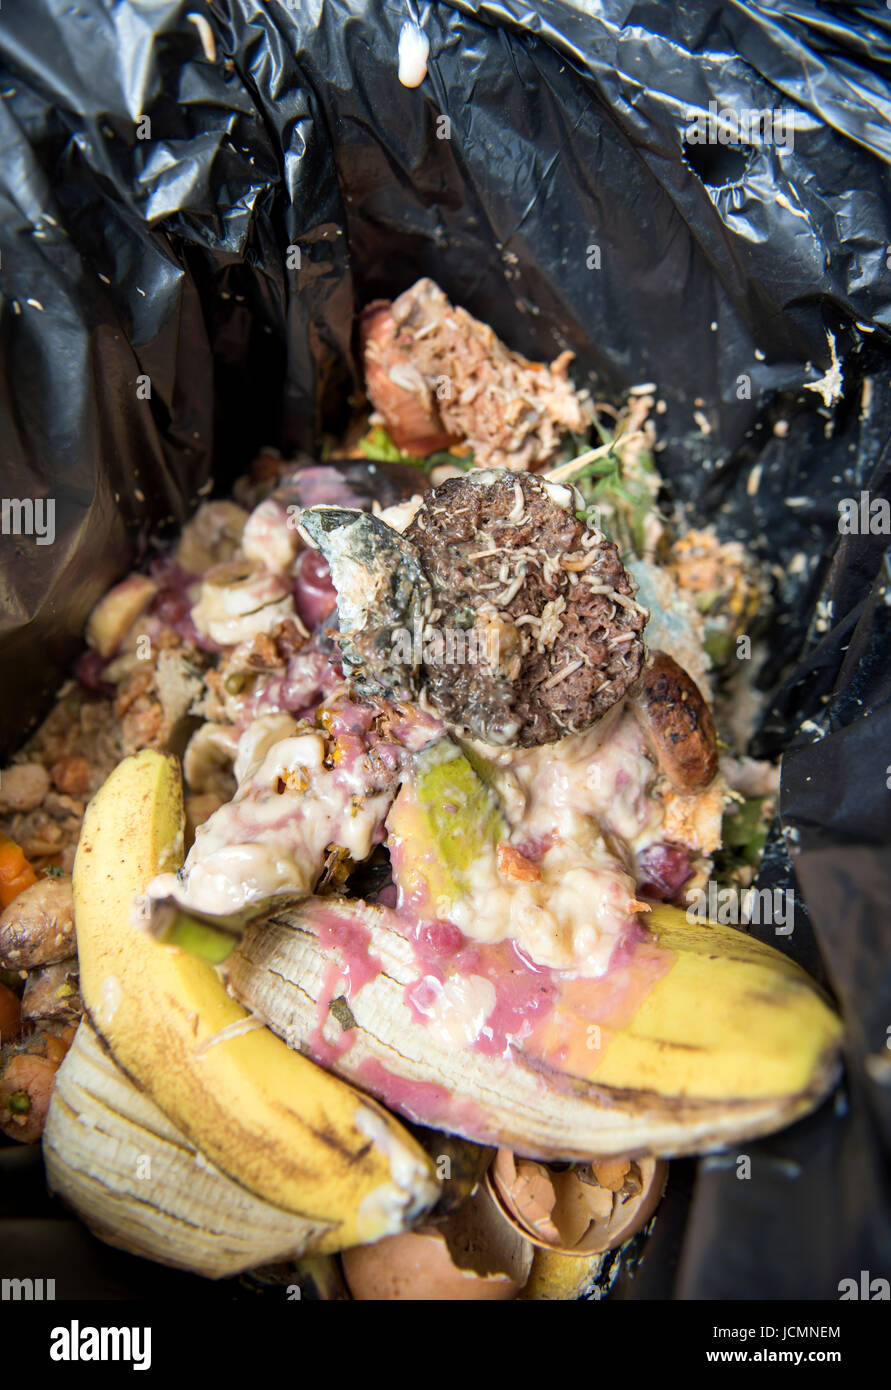 Un domestico rifiuti alimentari di un contenitore che è diventato infestate da vermi REGNO UNITO Foto Stock